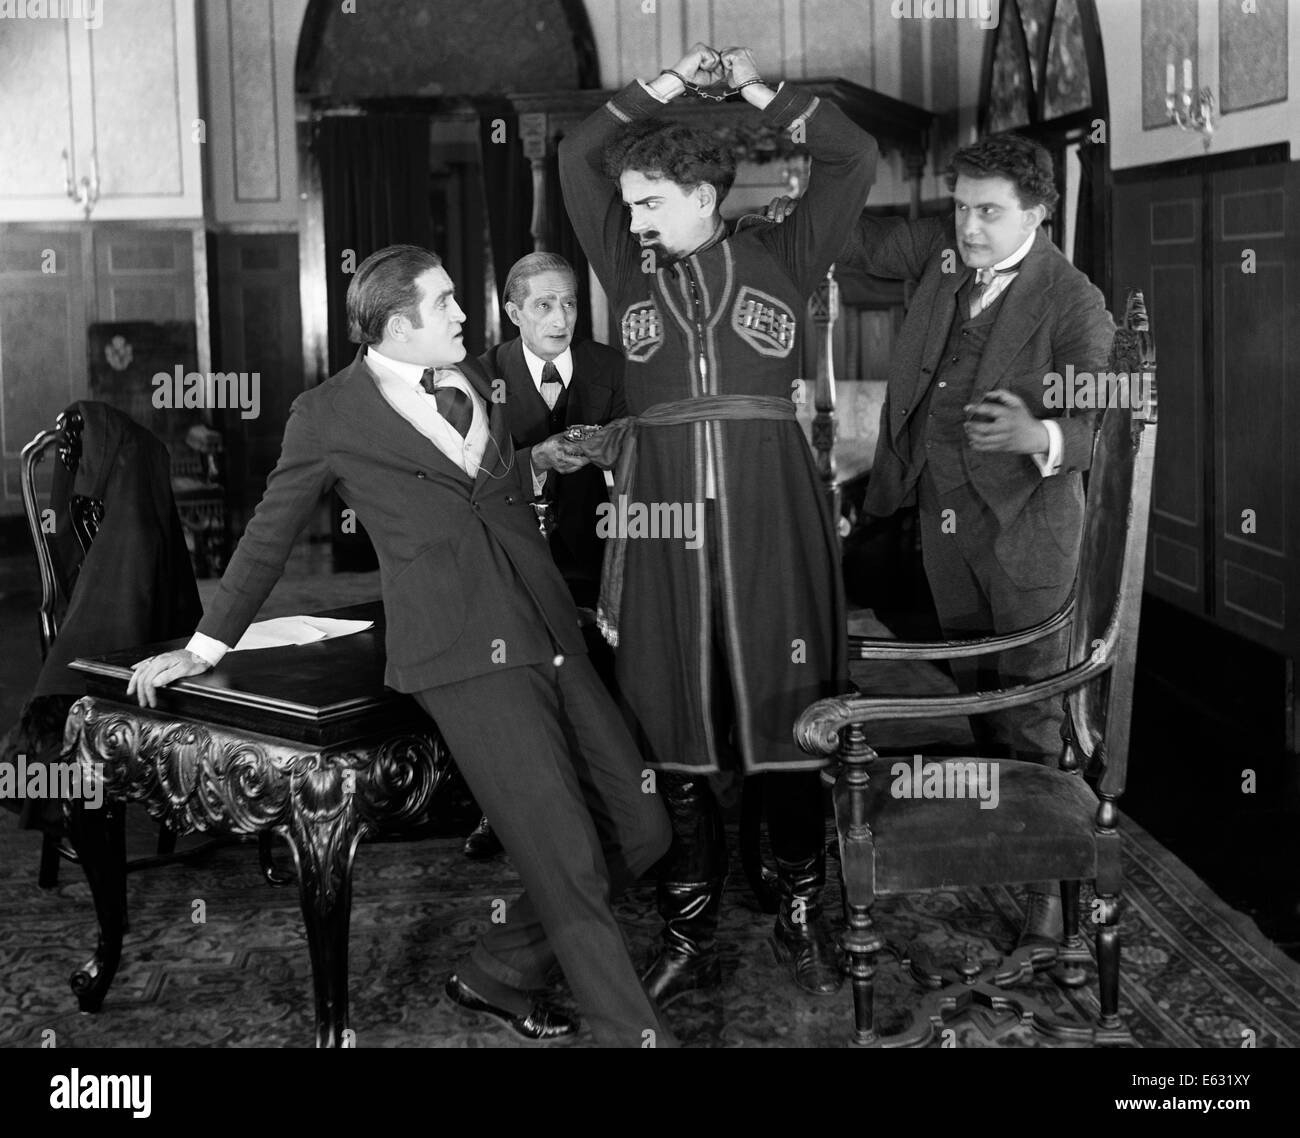 Années 1910 Années 1920 homme menotté en costume russe bras levés avec colère Banque D'Images